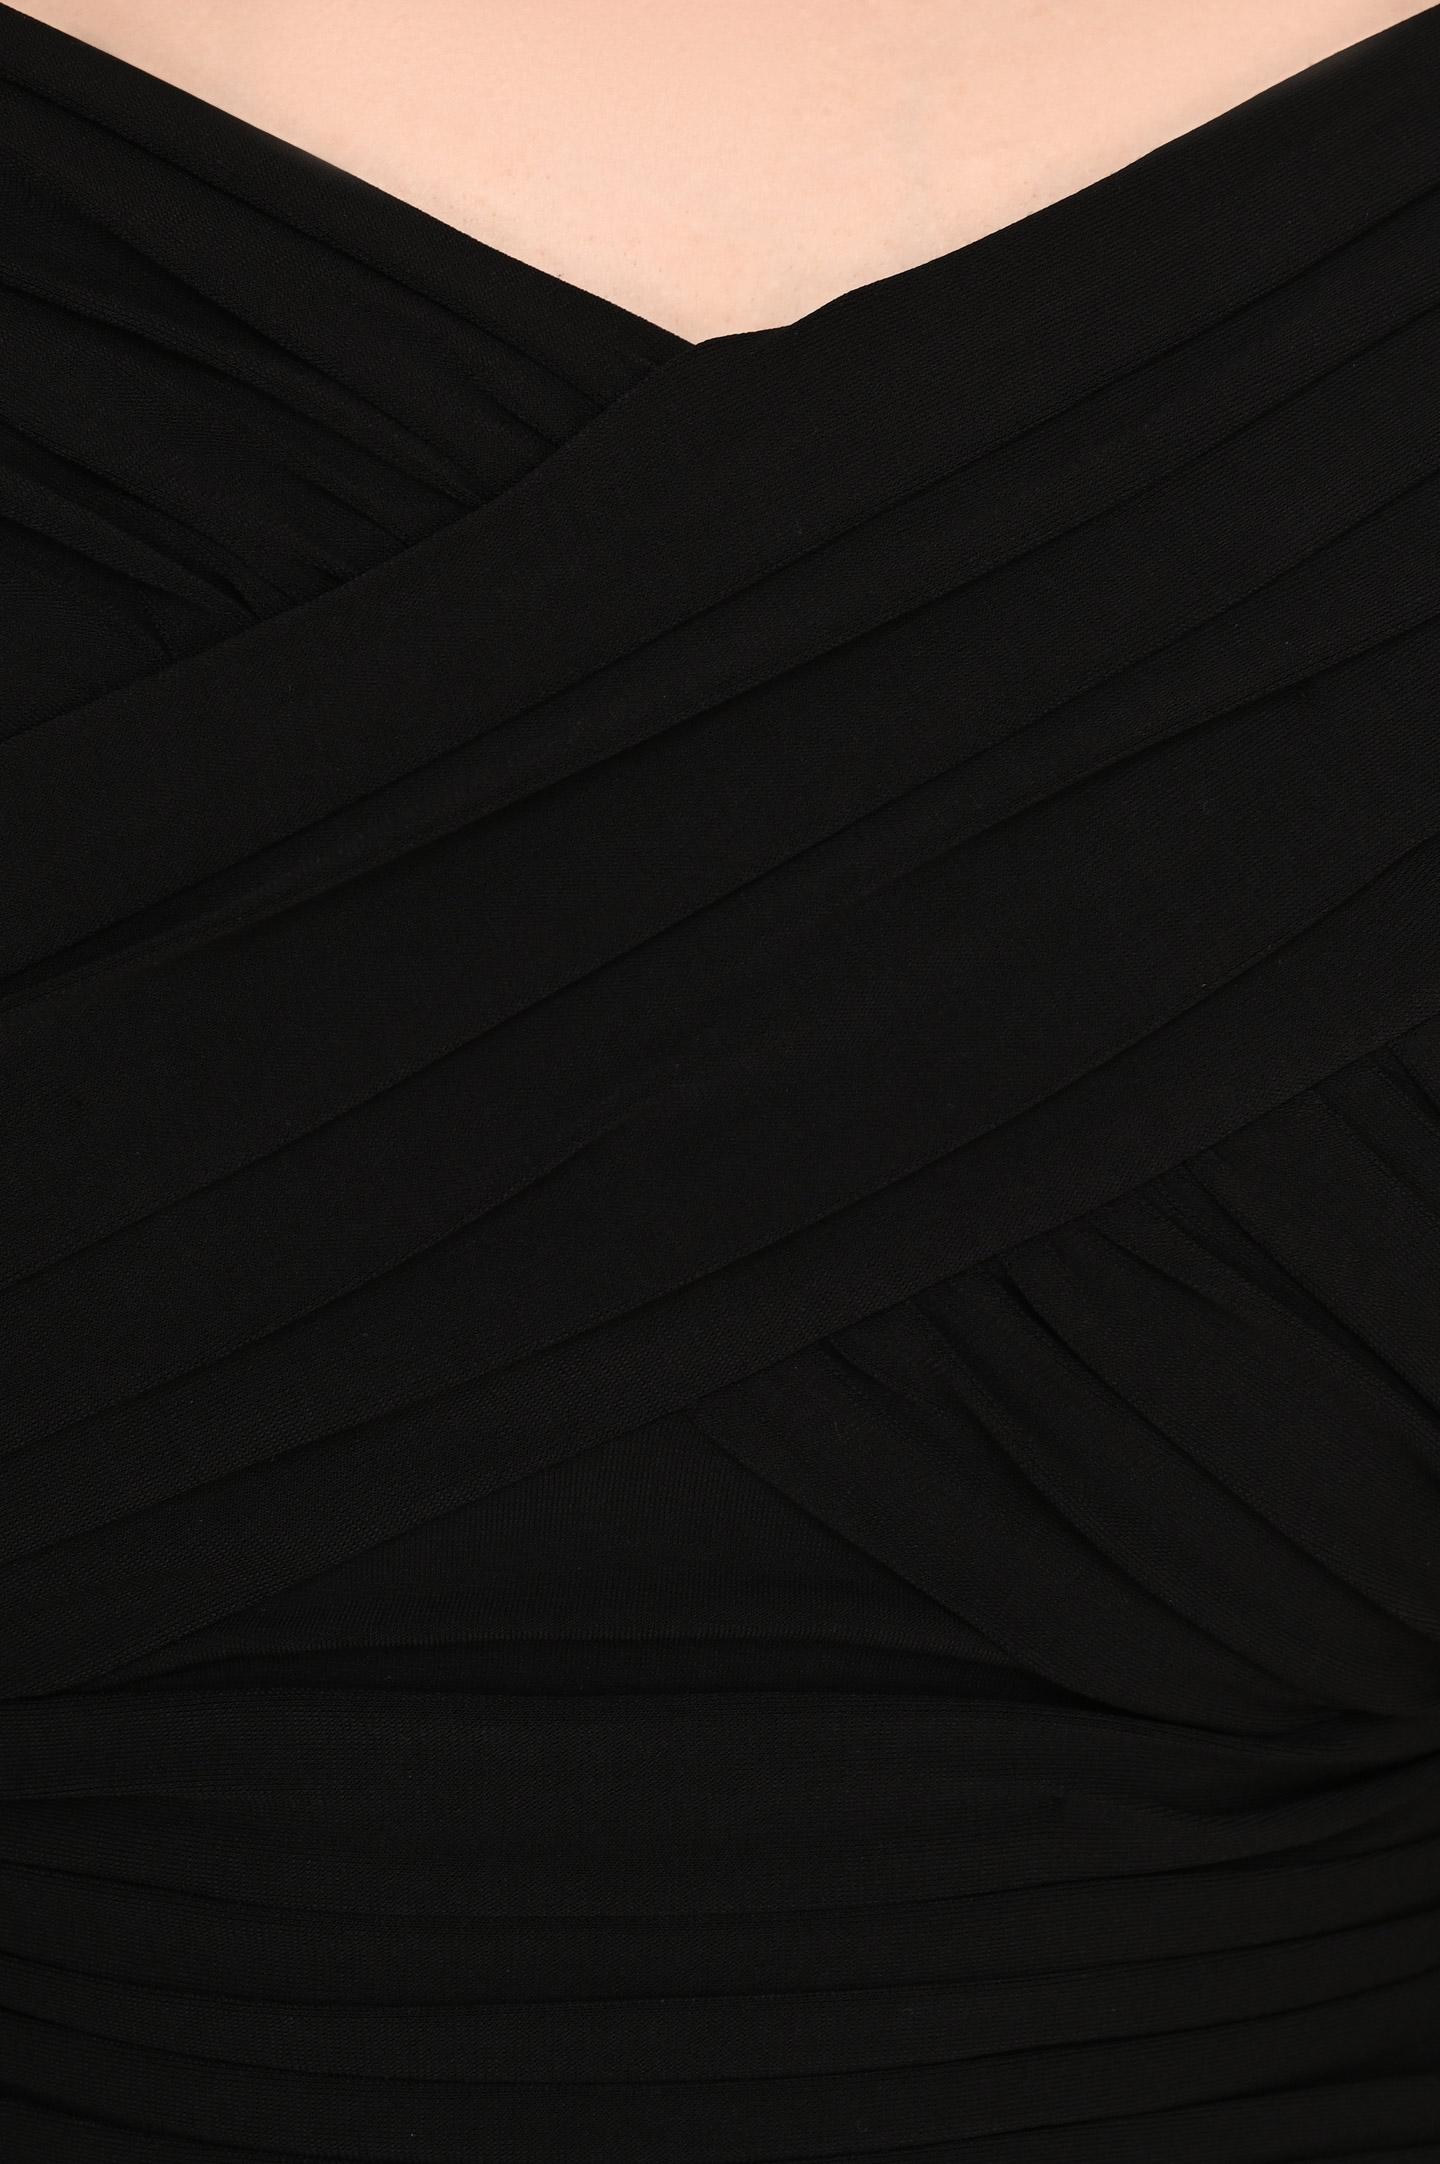 Блуза SELF PORTRAIT RS22-110T, цвет: Черный, Женский